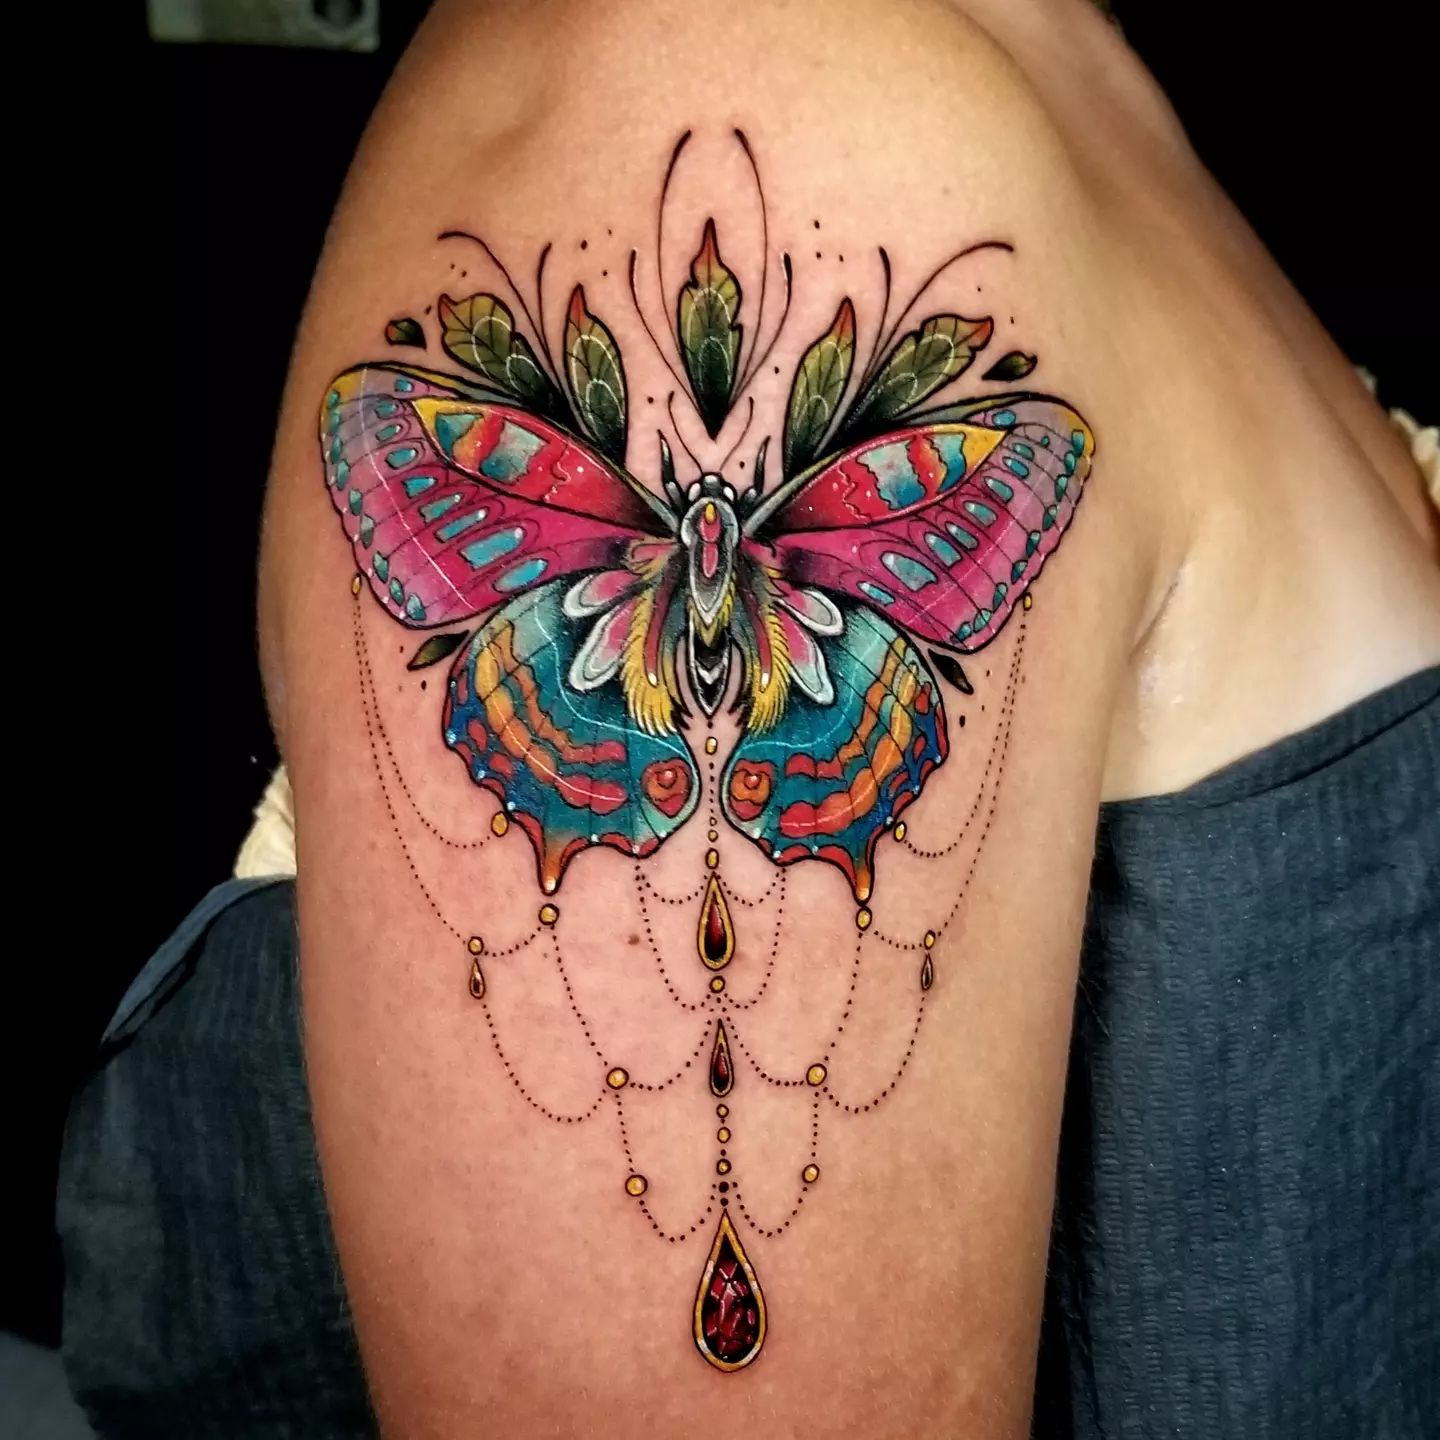 Tatuaje de mariposa colorido y artístico